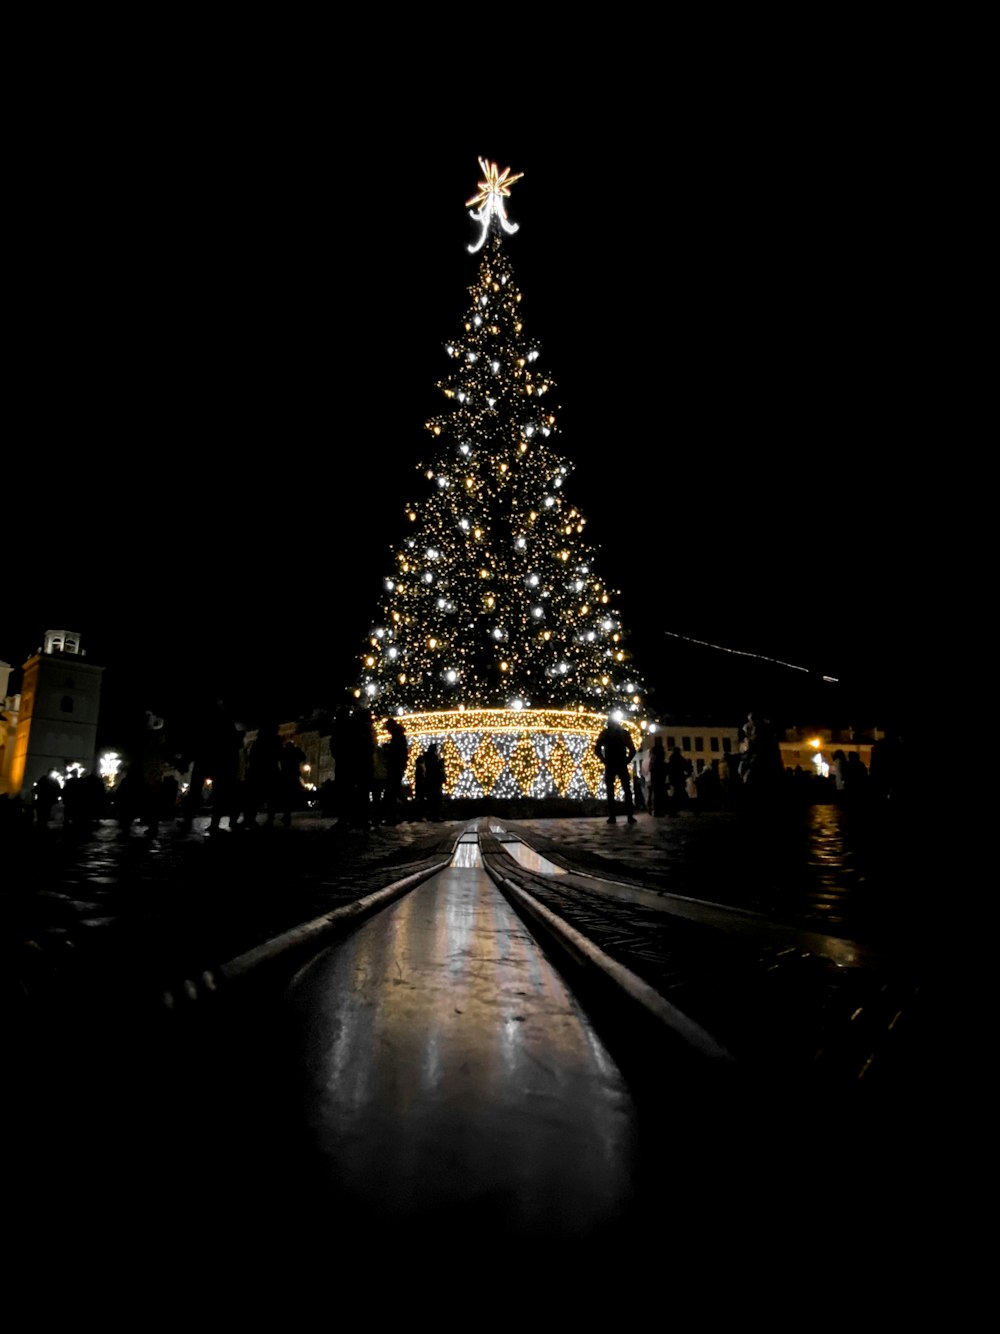 turned-on Christmas tree at night